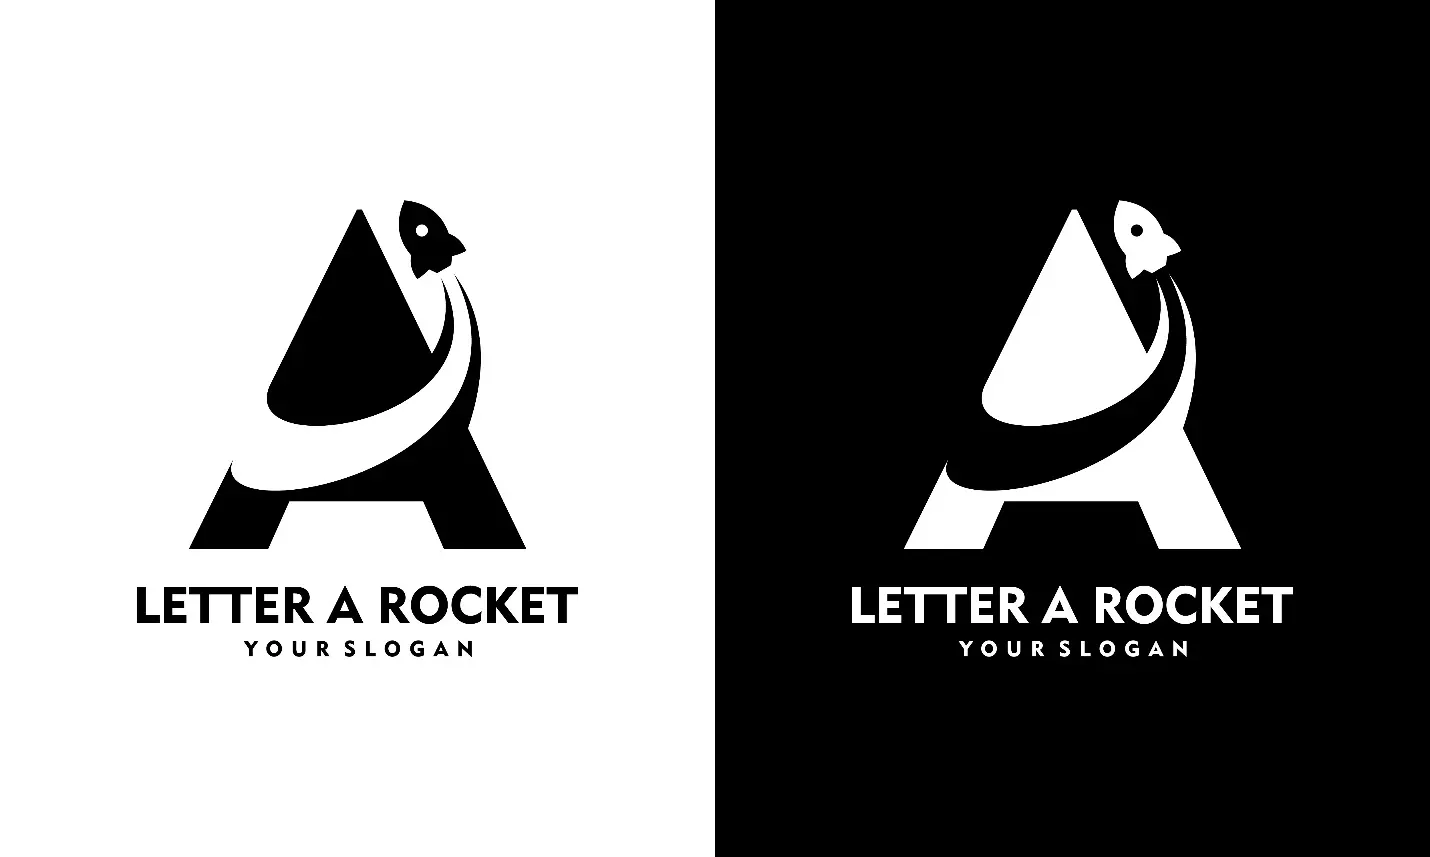 Zwei gespiegelte Varianten eines Logos in Schwarzweiß.